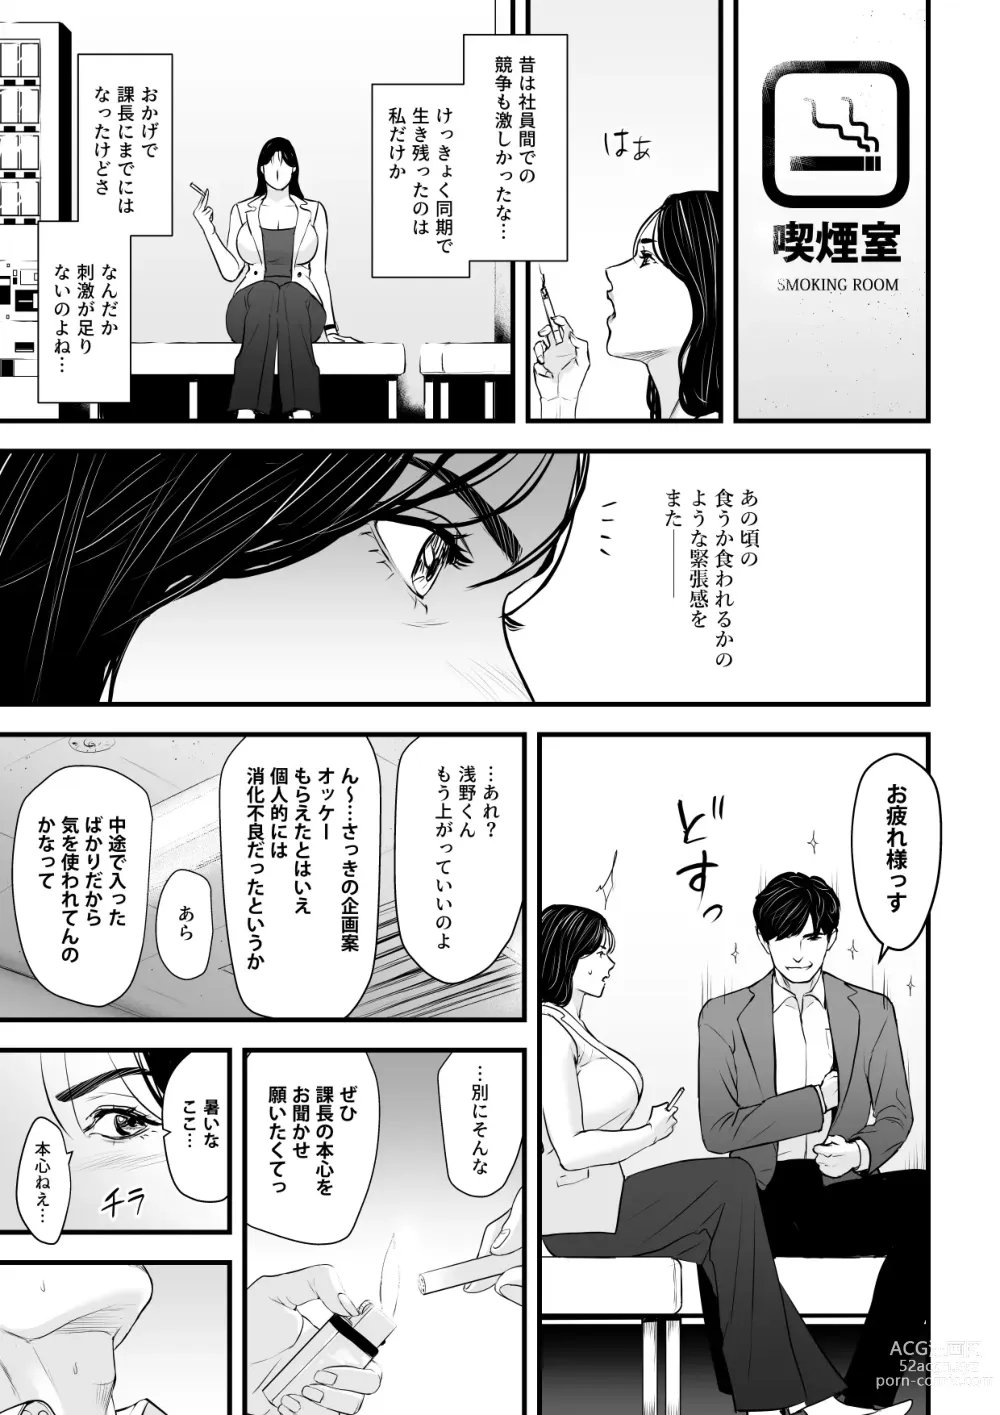 Page 6 of doujinshi Erito onnakachouwa kukkbokusaseraretai